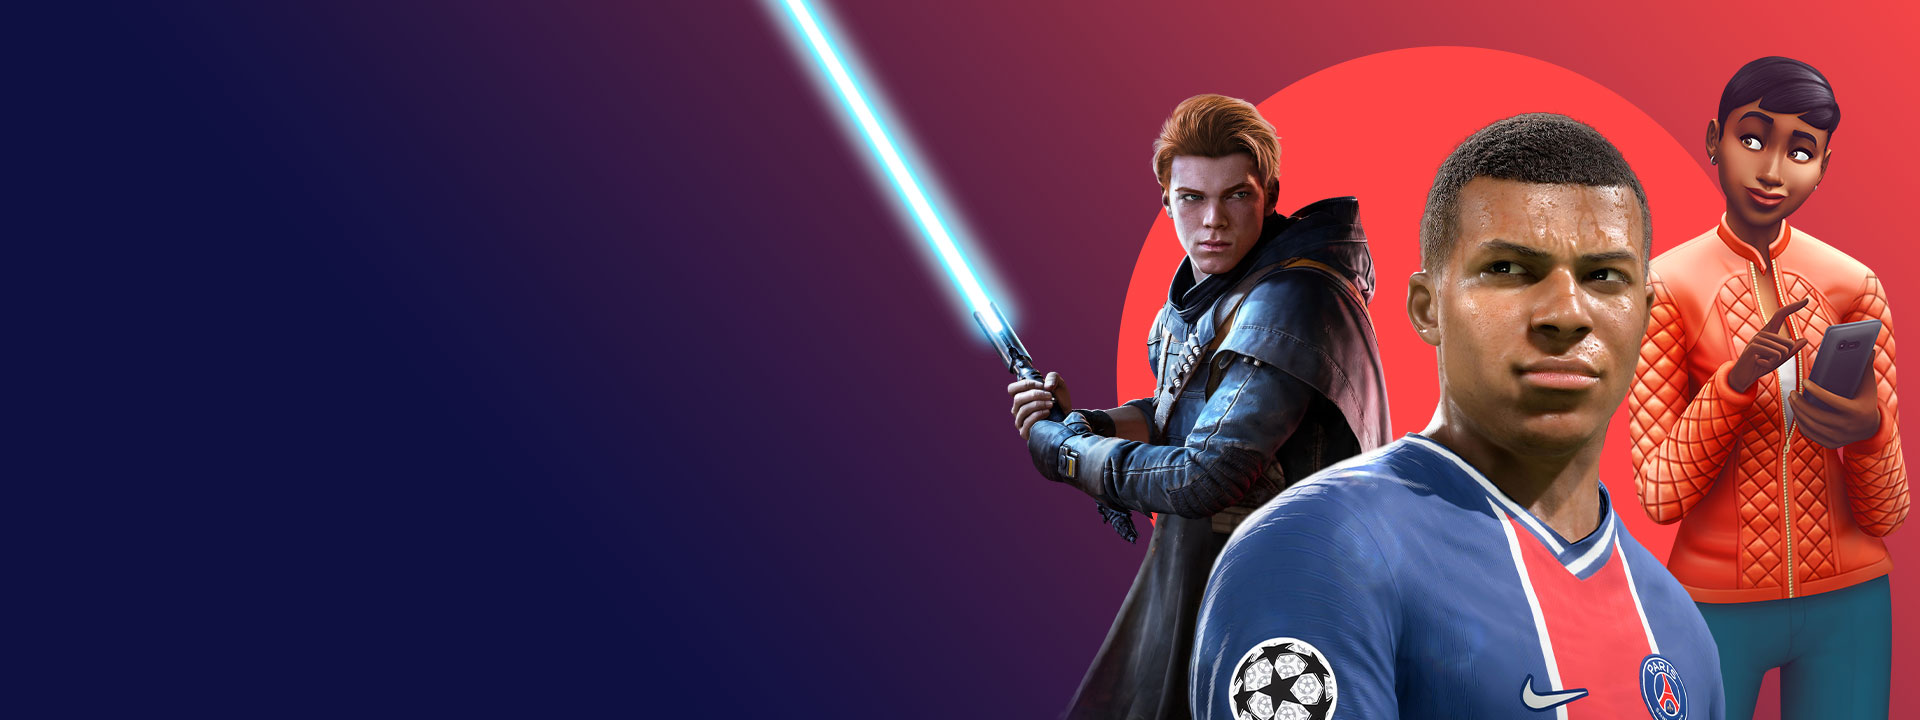 Arte dos jogos da EA incluídos no Xbox Game Pass, como Star Wars Jedi: Fallen Order, FIFA 22 e The Sims 4.